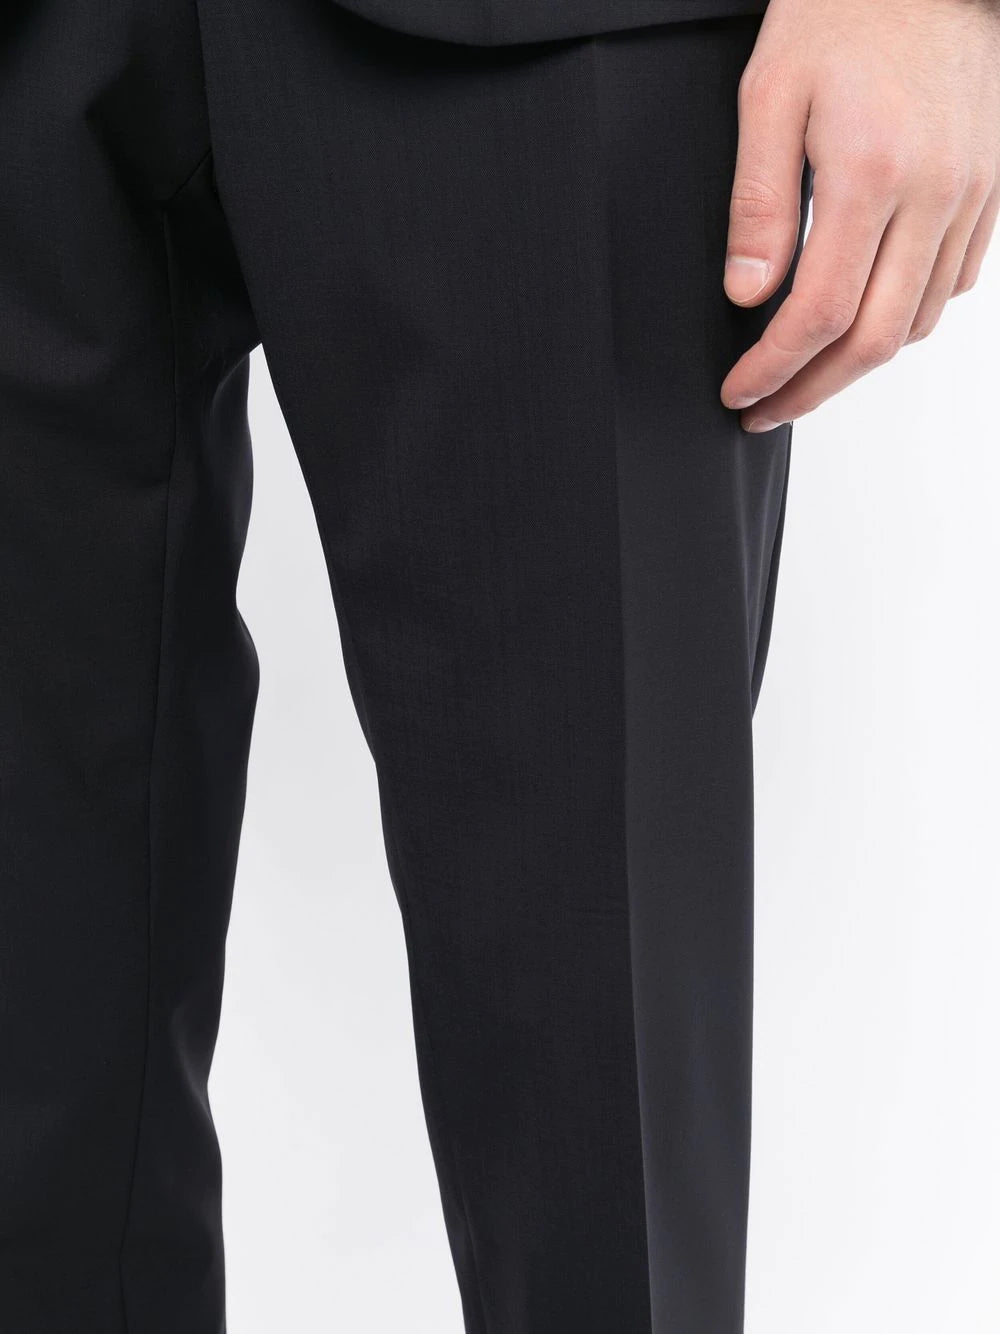 Paul Smith Kensington Slim-Fit Suit